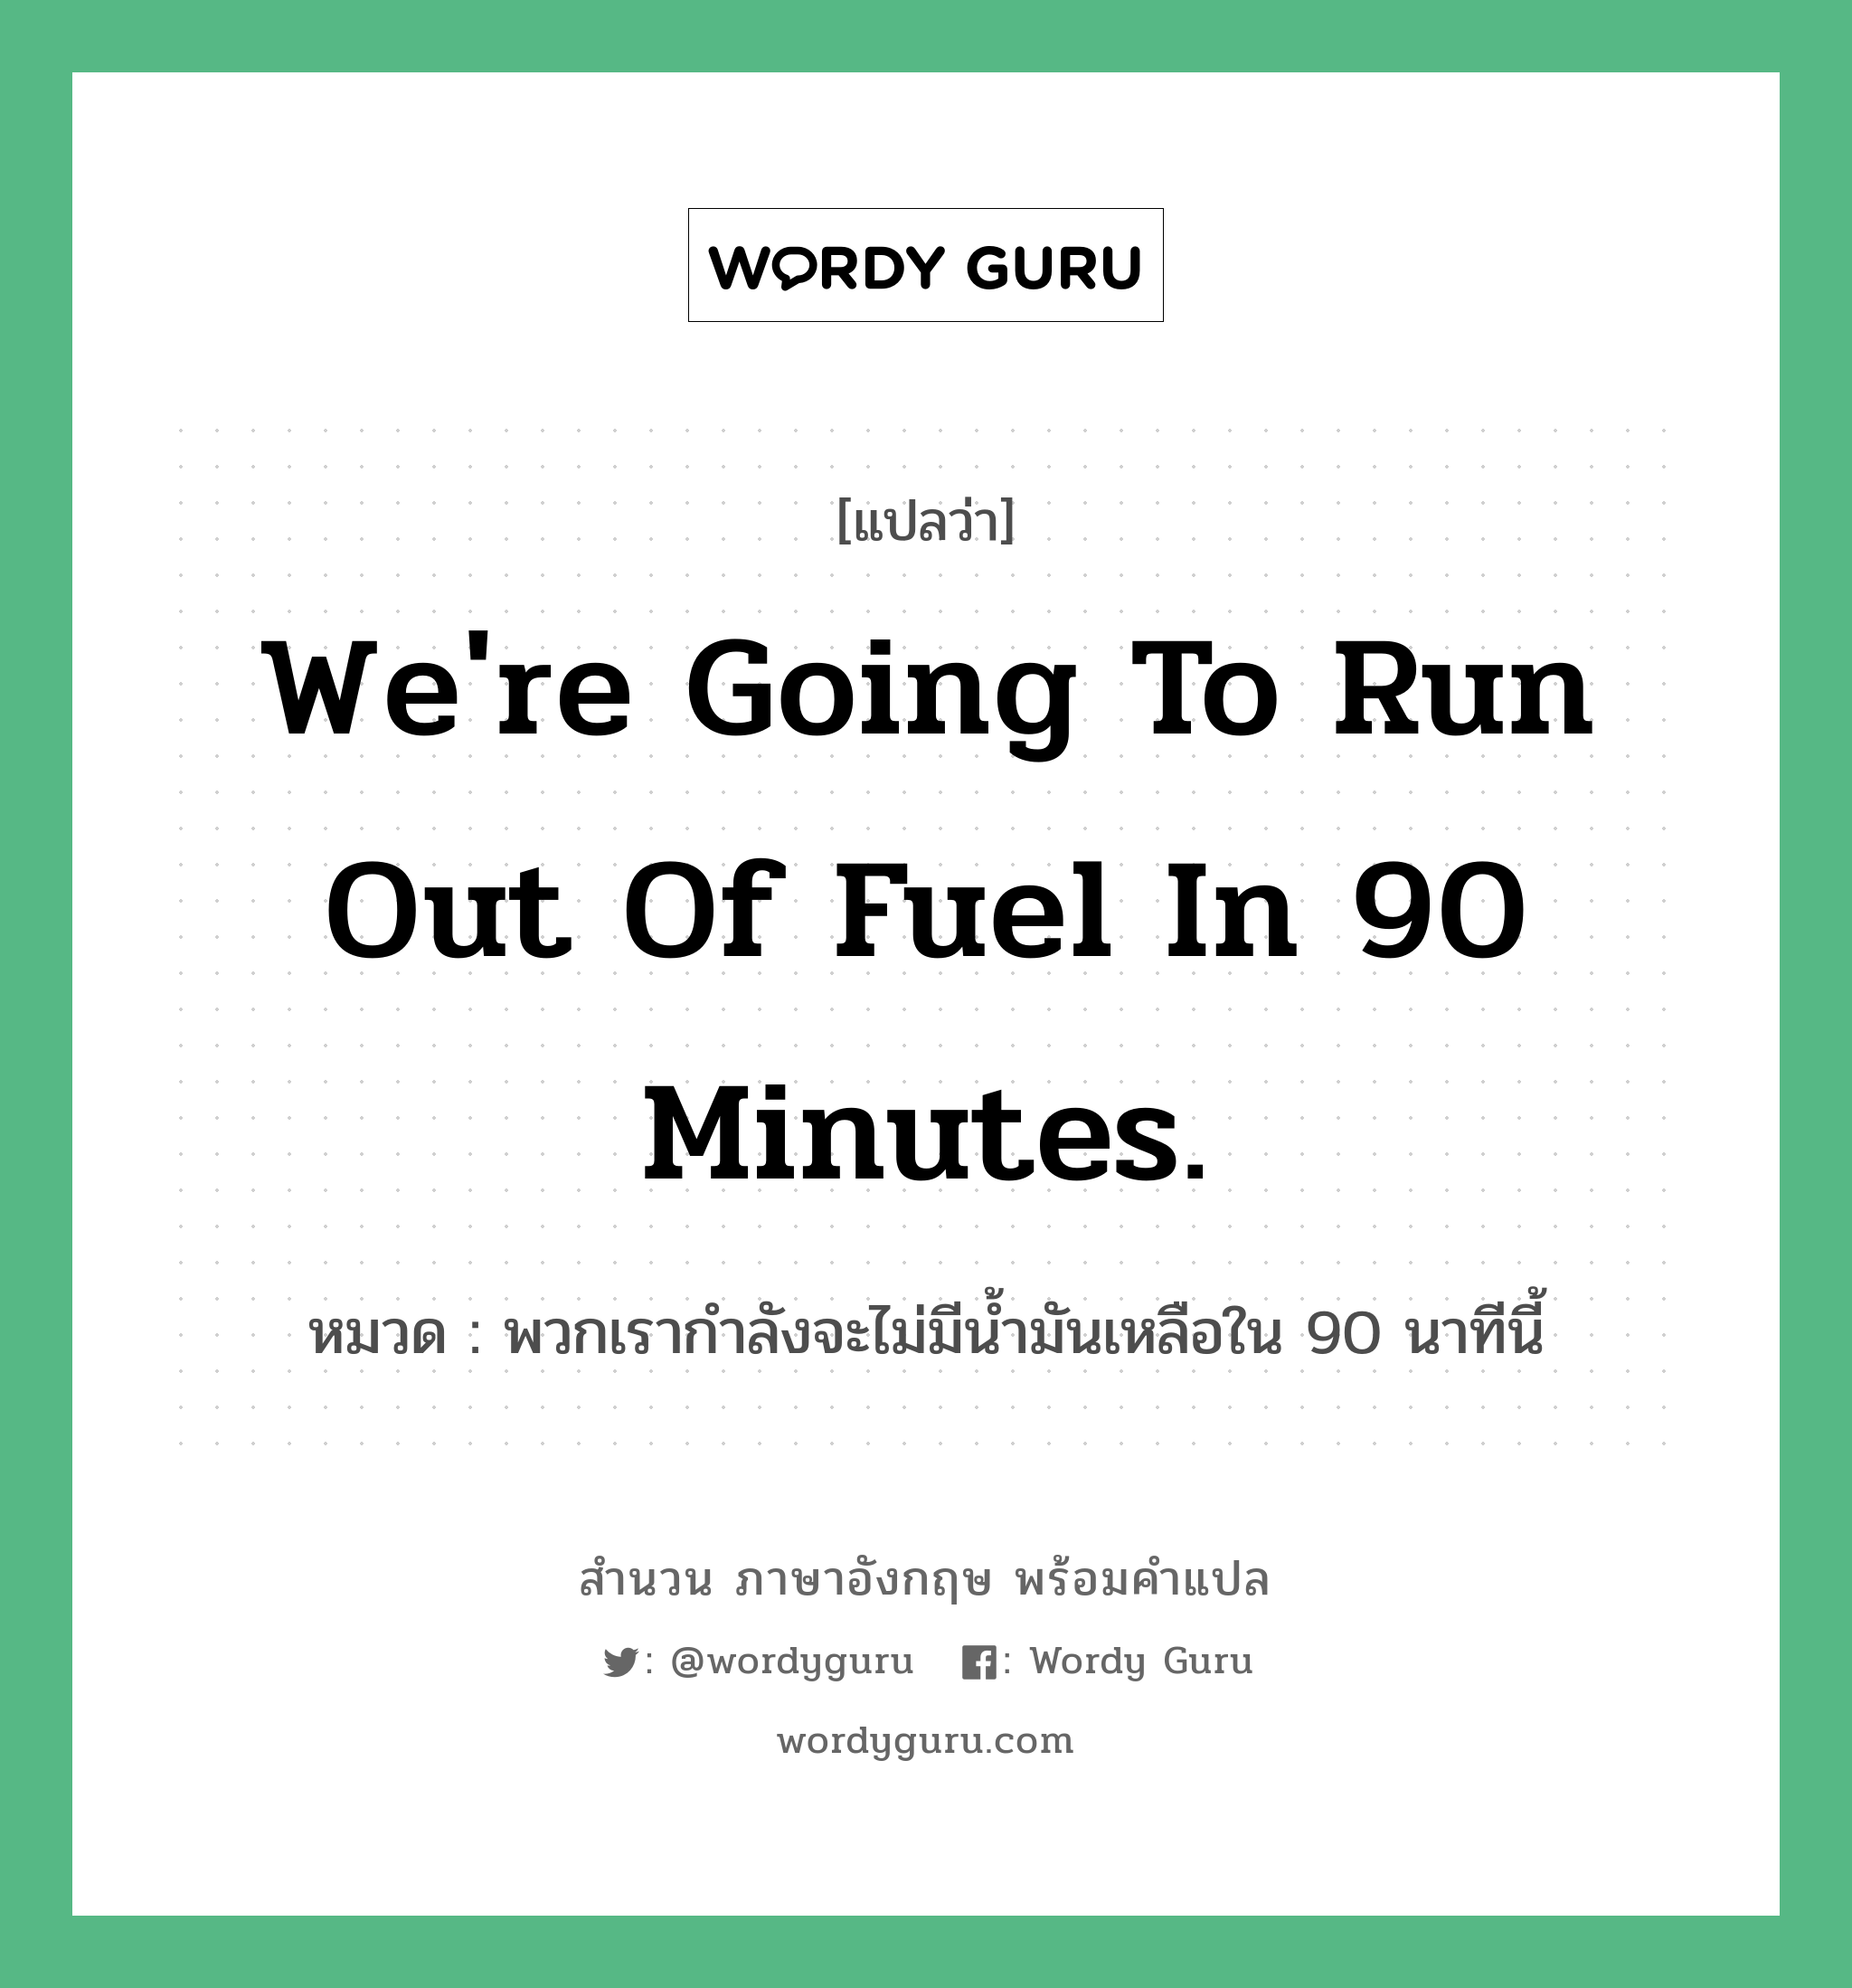 พวกเรากำลังจะไม่มีน้ำมันเหลือใน 90 นาทีนี้ ภาษาอังกฤษ?, สำนวนภาษาอังกฤษ พวกเรากำลังจะไม่มีน้ำมันเหลือใน 90 นาทีนี้ แปลว่า พวกเรากำลังจะไม่มีน้ำมันเหลือใน 90 นาทีนี้ หมวด We're going to run out of fuel in 90 minutes.